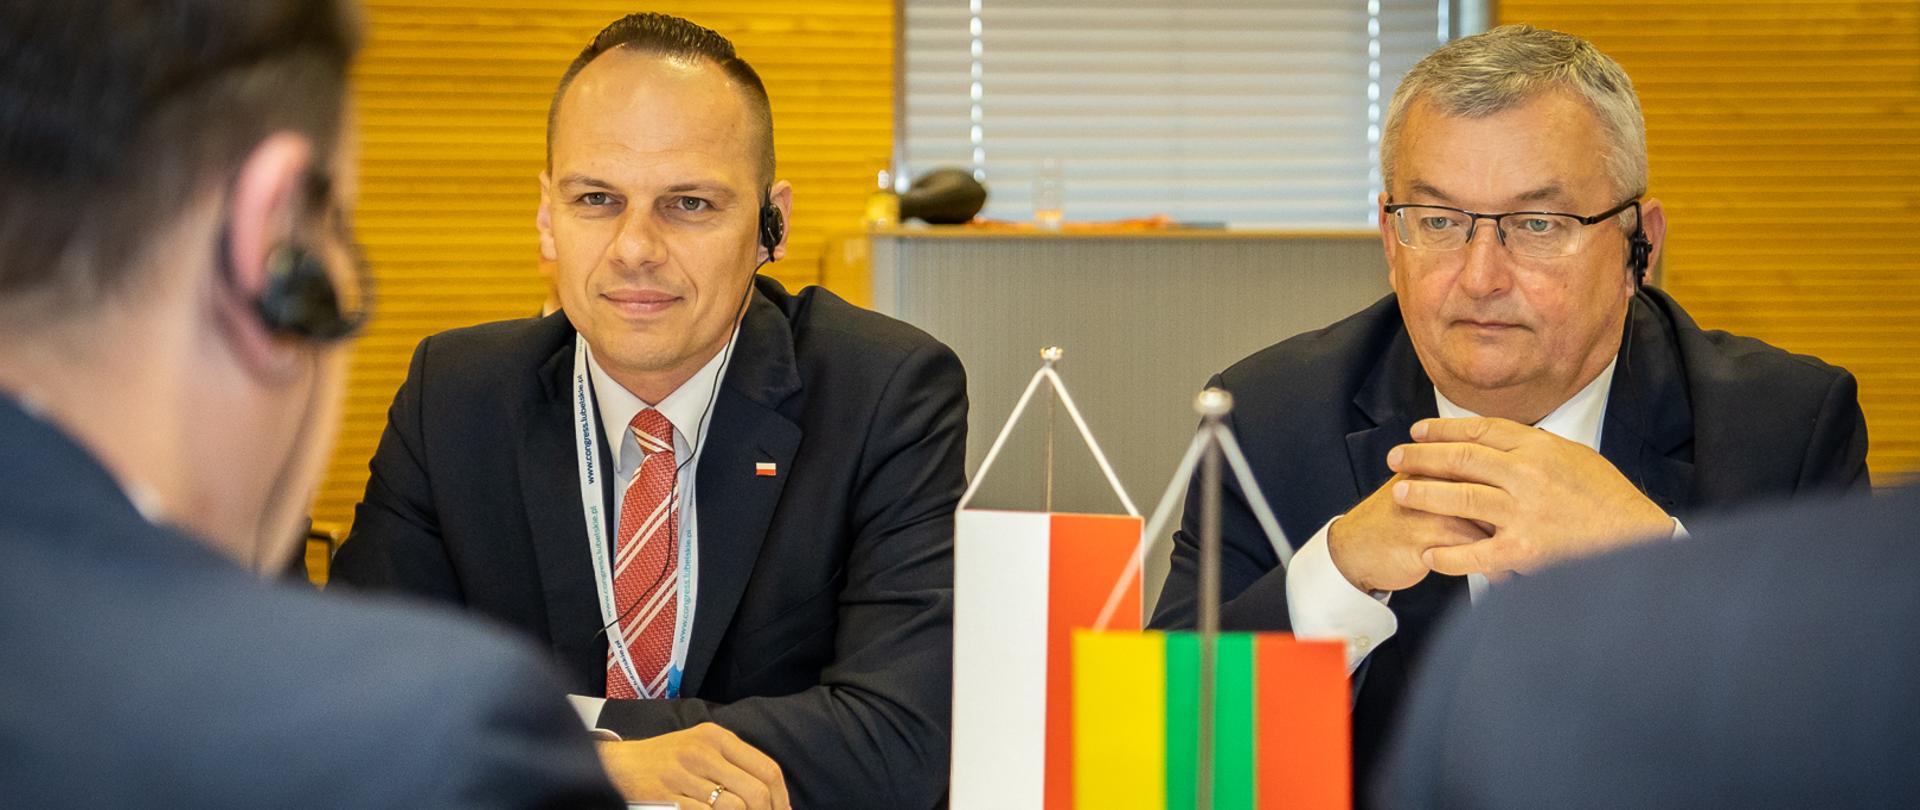 Ministrowie A. Adamczyk i R. Weber w trakcie rozmowy z delegacją litewską (1)